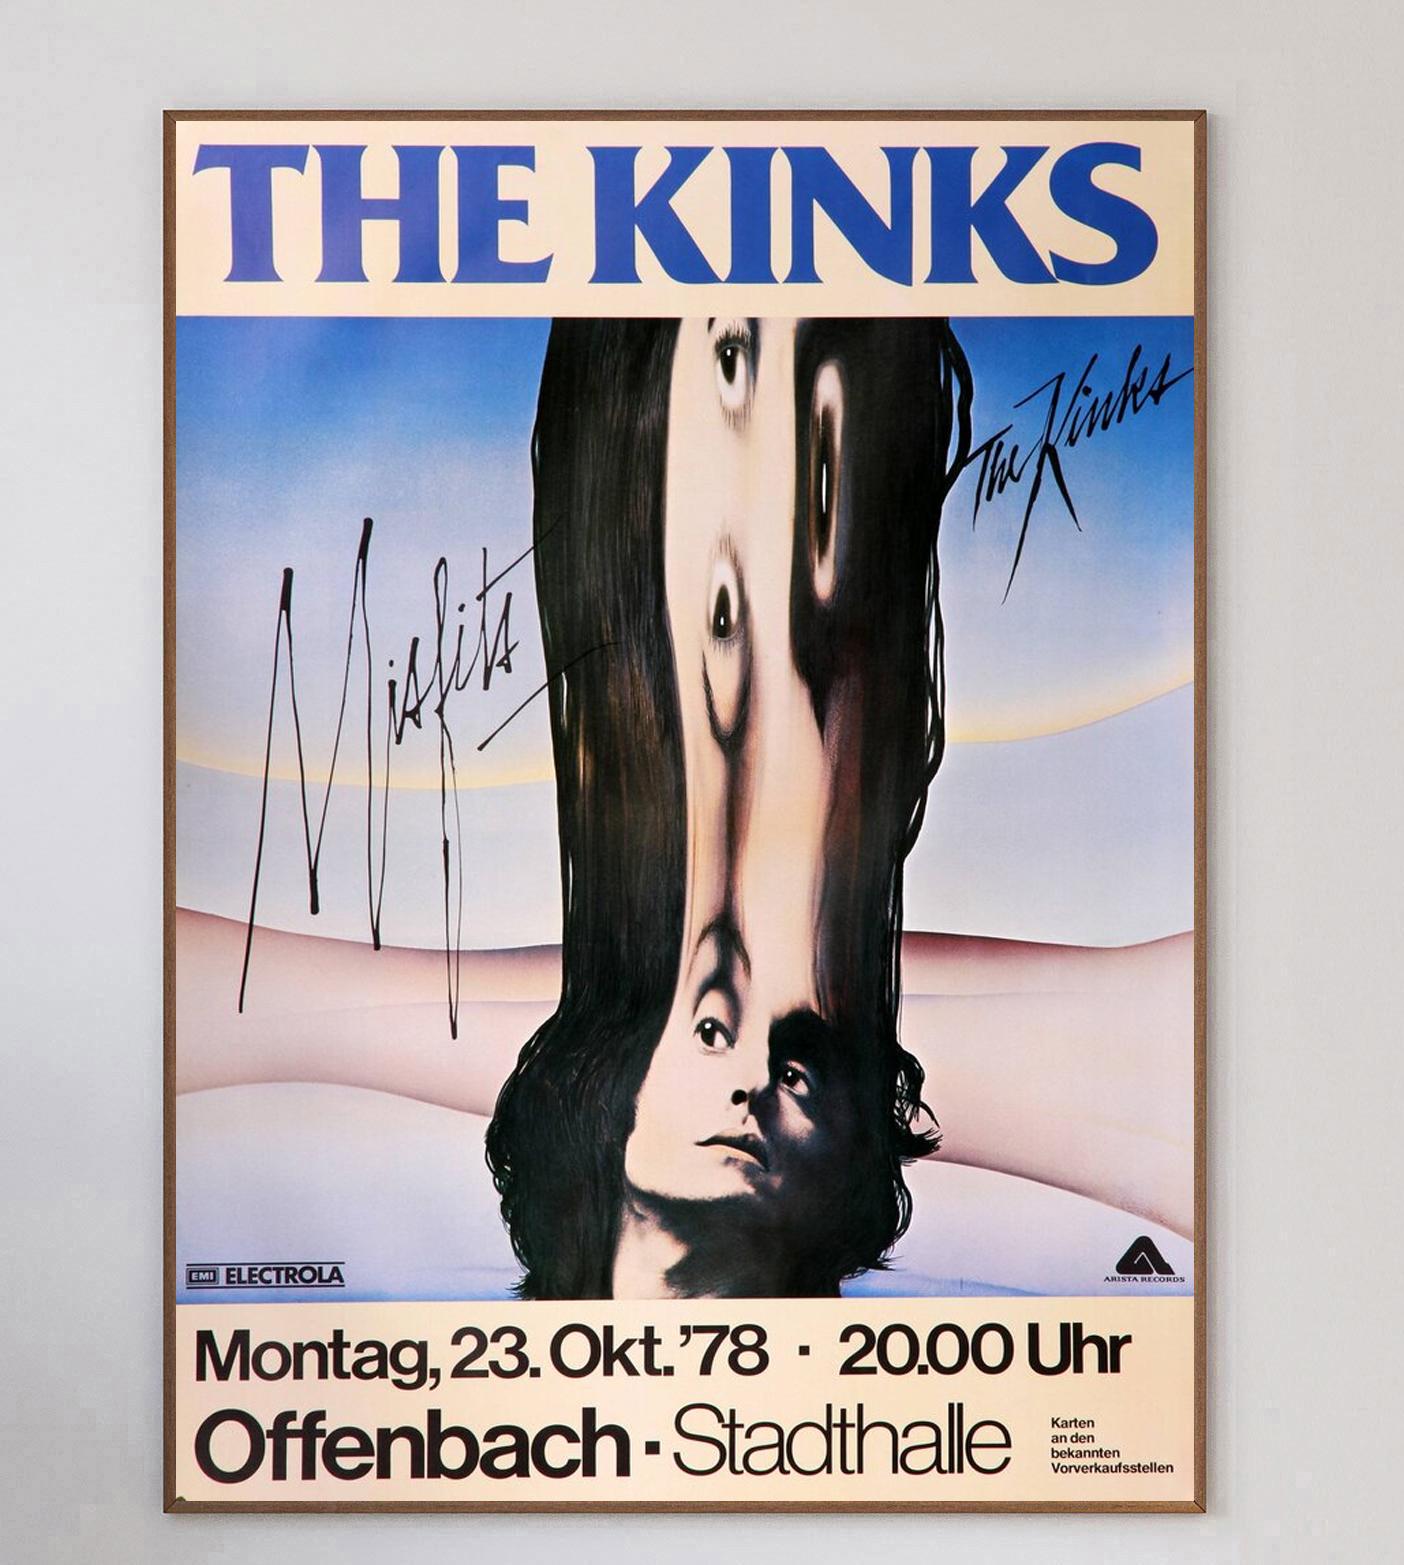 Magnifique affiche promouvant le concert des Kinks à la Offenbach Stadthalle en Allemagne en octobre 1978. Représentant la pochette de 